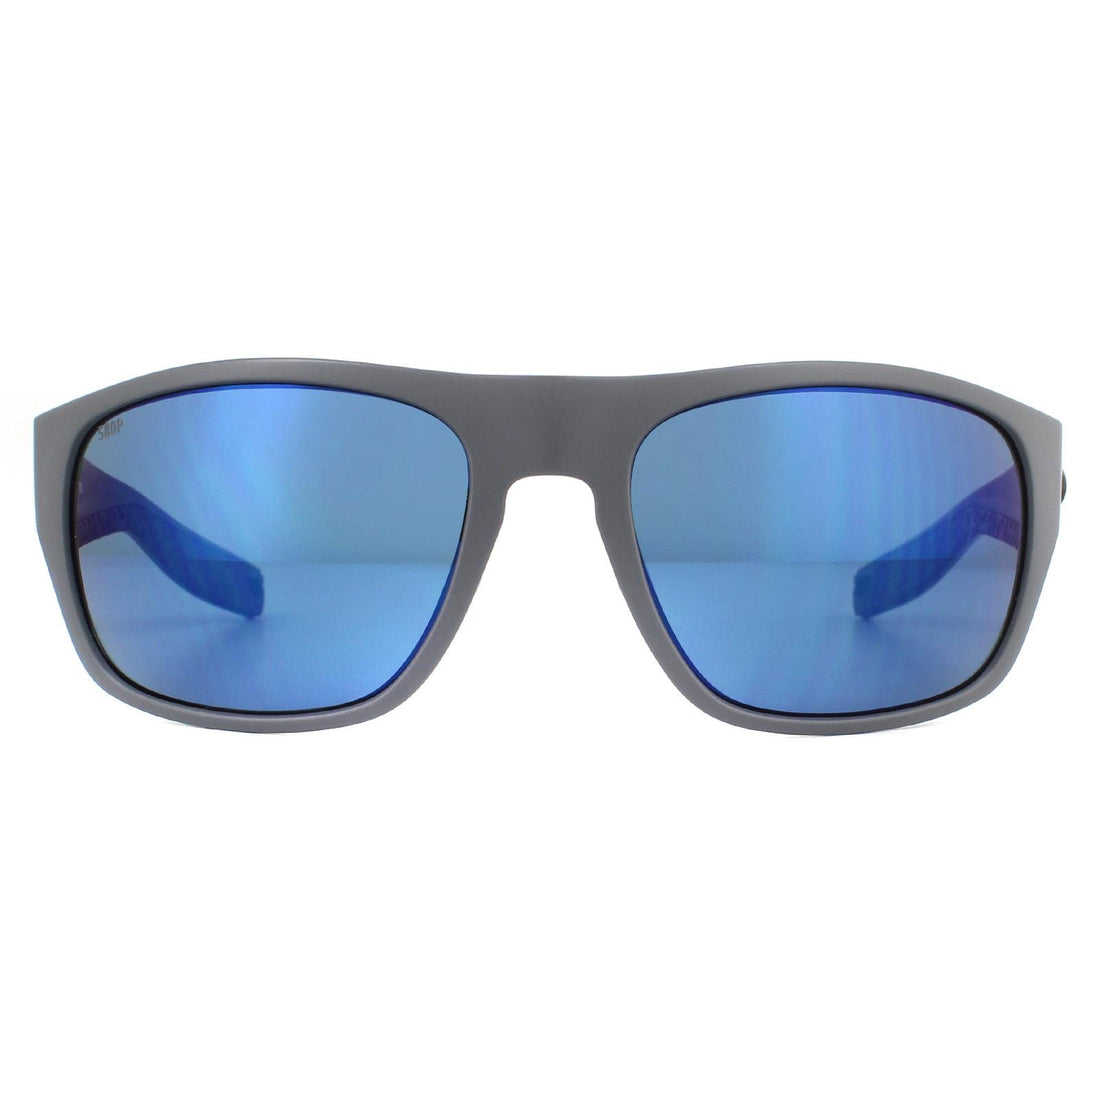 Costa Del Mar Tico Sunglasses Matte Grey Blue Mirror Polarized Plastic